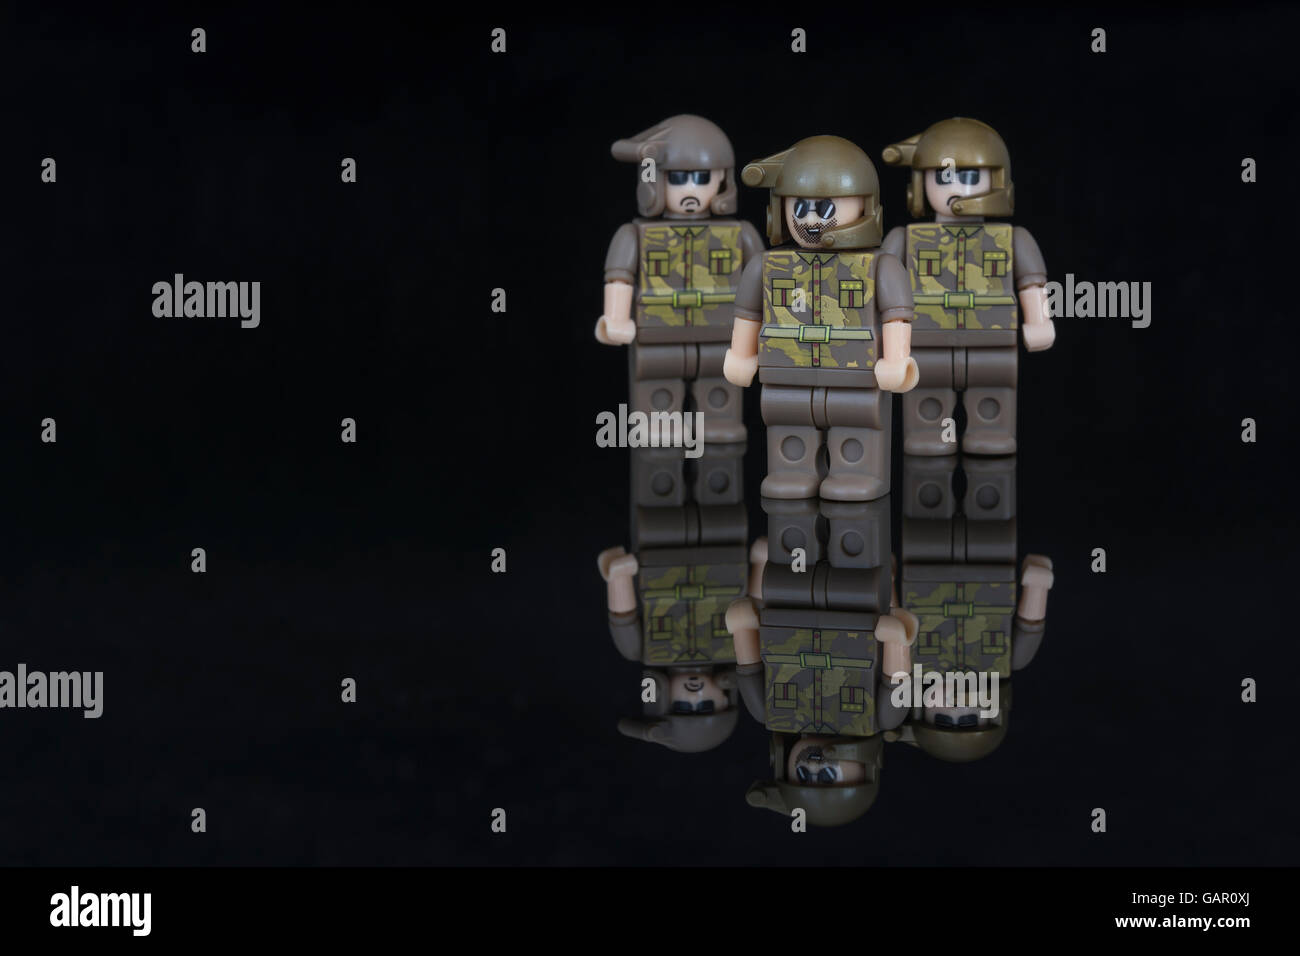 Concept de l'armée européenne, les Forces spéciales / SAS, représentée par les petits soldats de plomb. Aussi comme une métaphore de l'équipe et le leadership. Banque D'Images